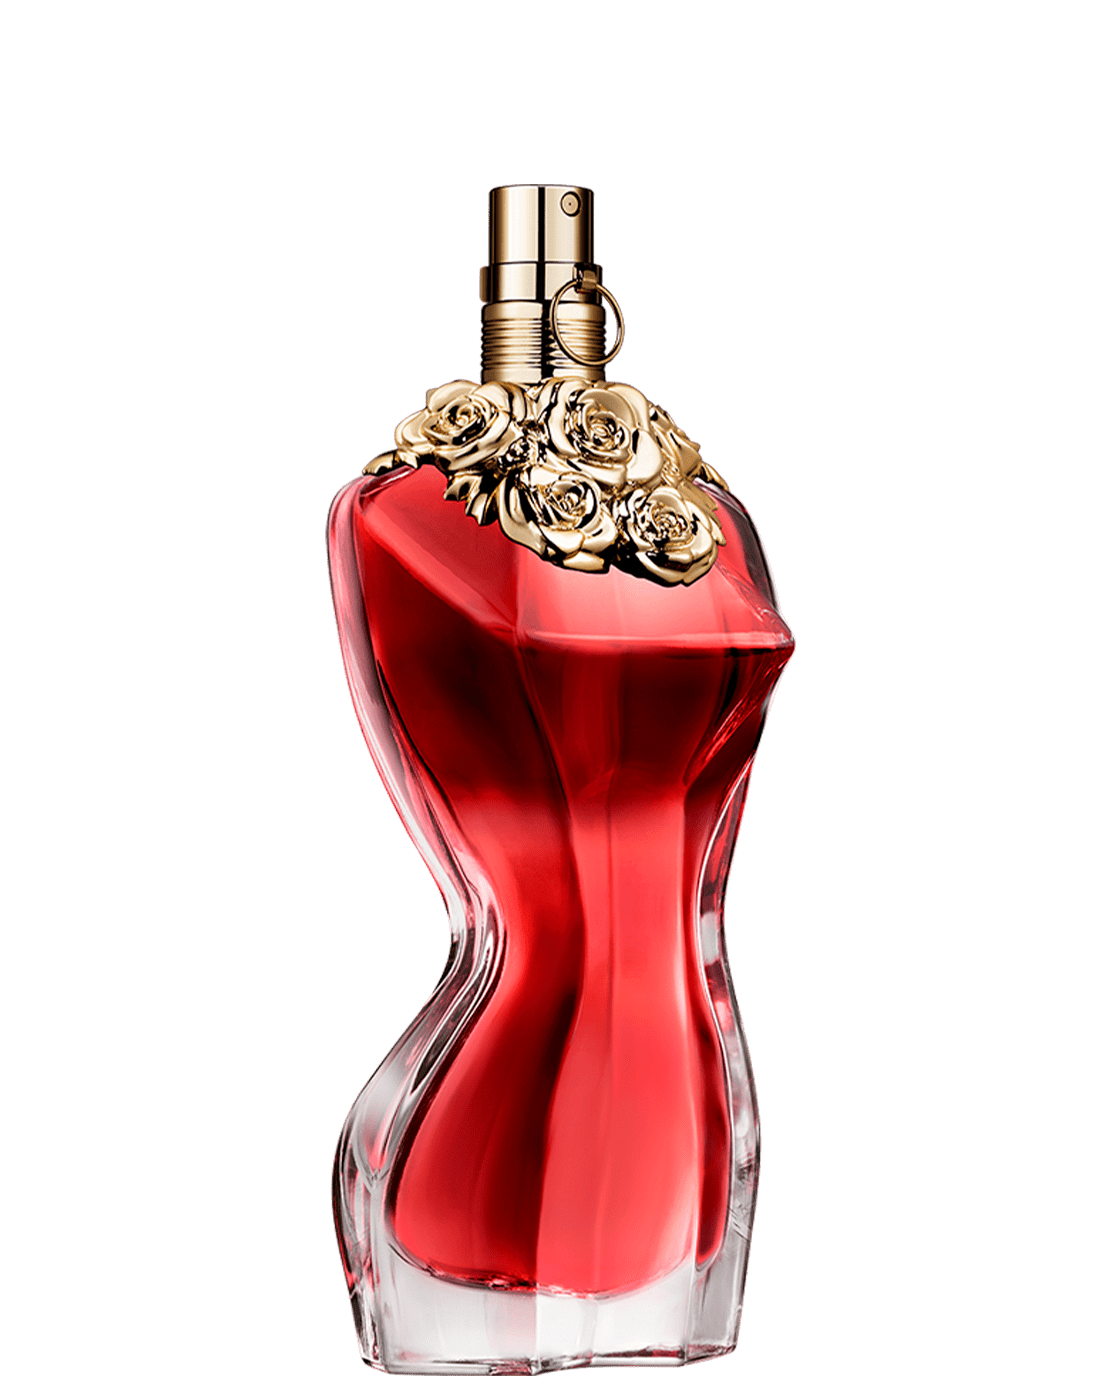 Jean Paul Gaultier Perfume by Jean Paul Gaultier